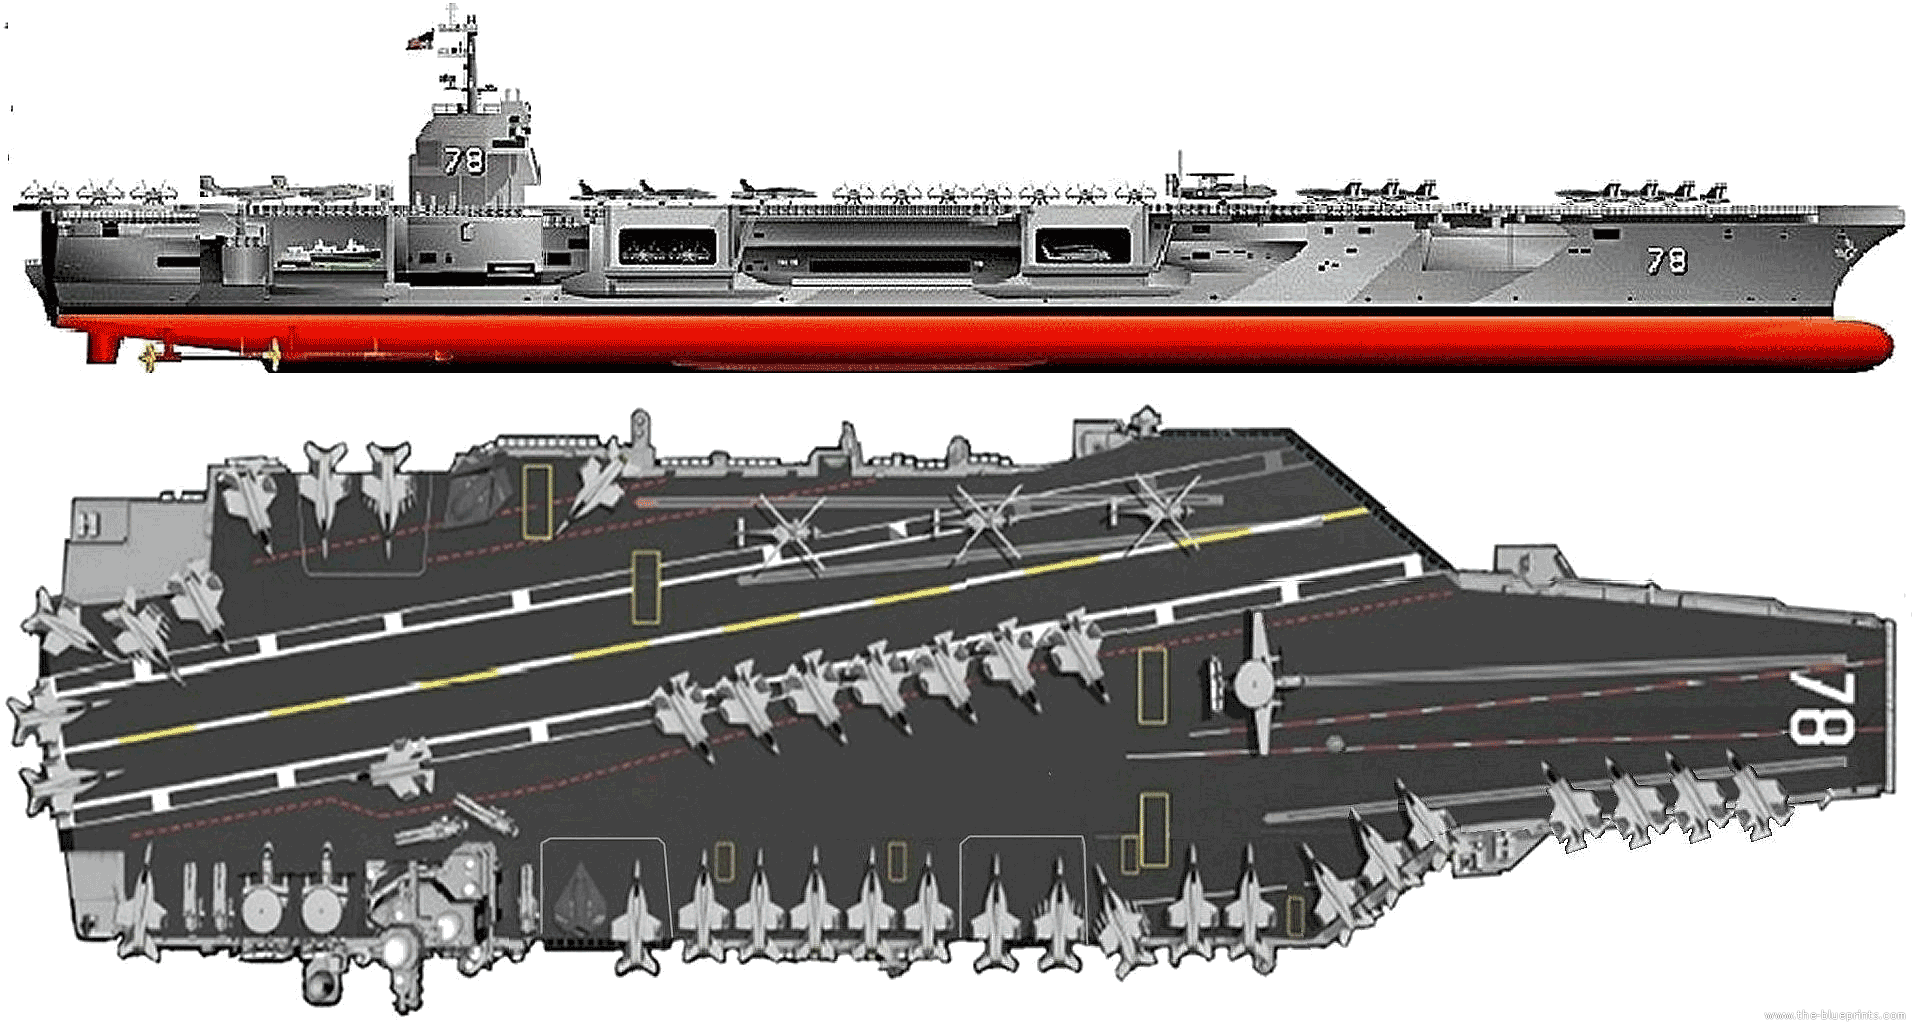 Uss gerald r ford class aircraft carrier #3